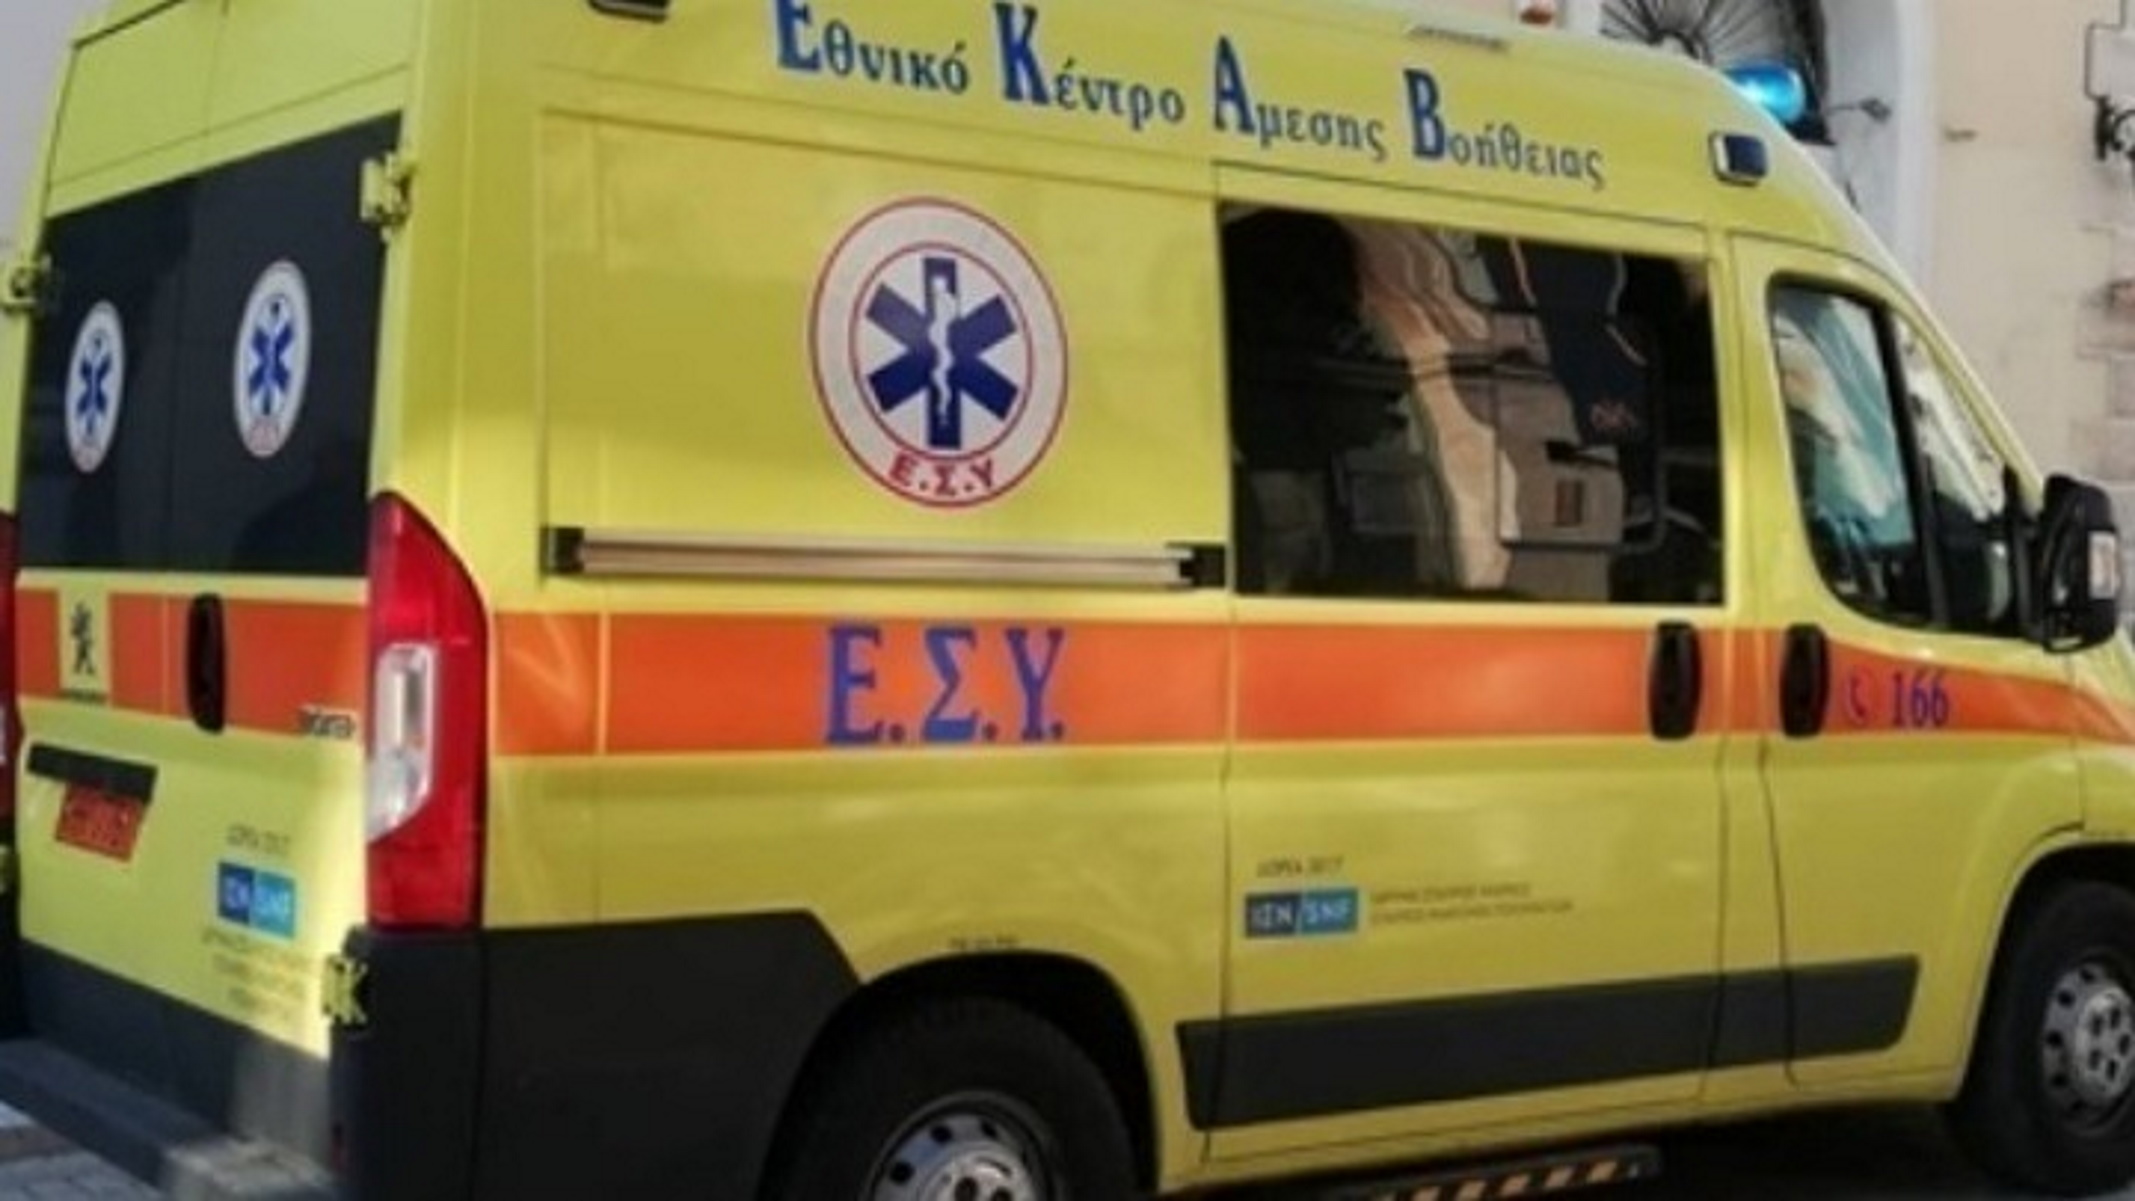 Χαλκιδική: Τροχαίο δυστύχημα με ένα νεκρό και έναν τραυματία – Σκοτώθηκε ακαριαία ο συνοδηγός